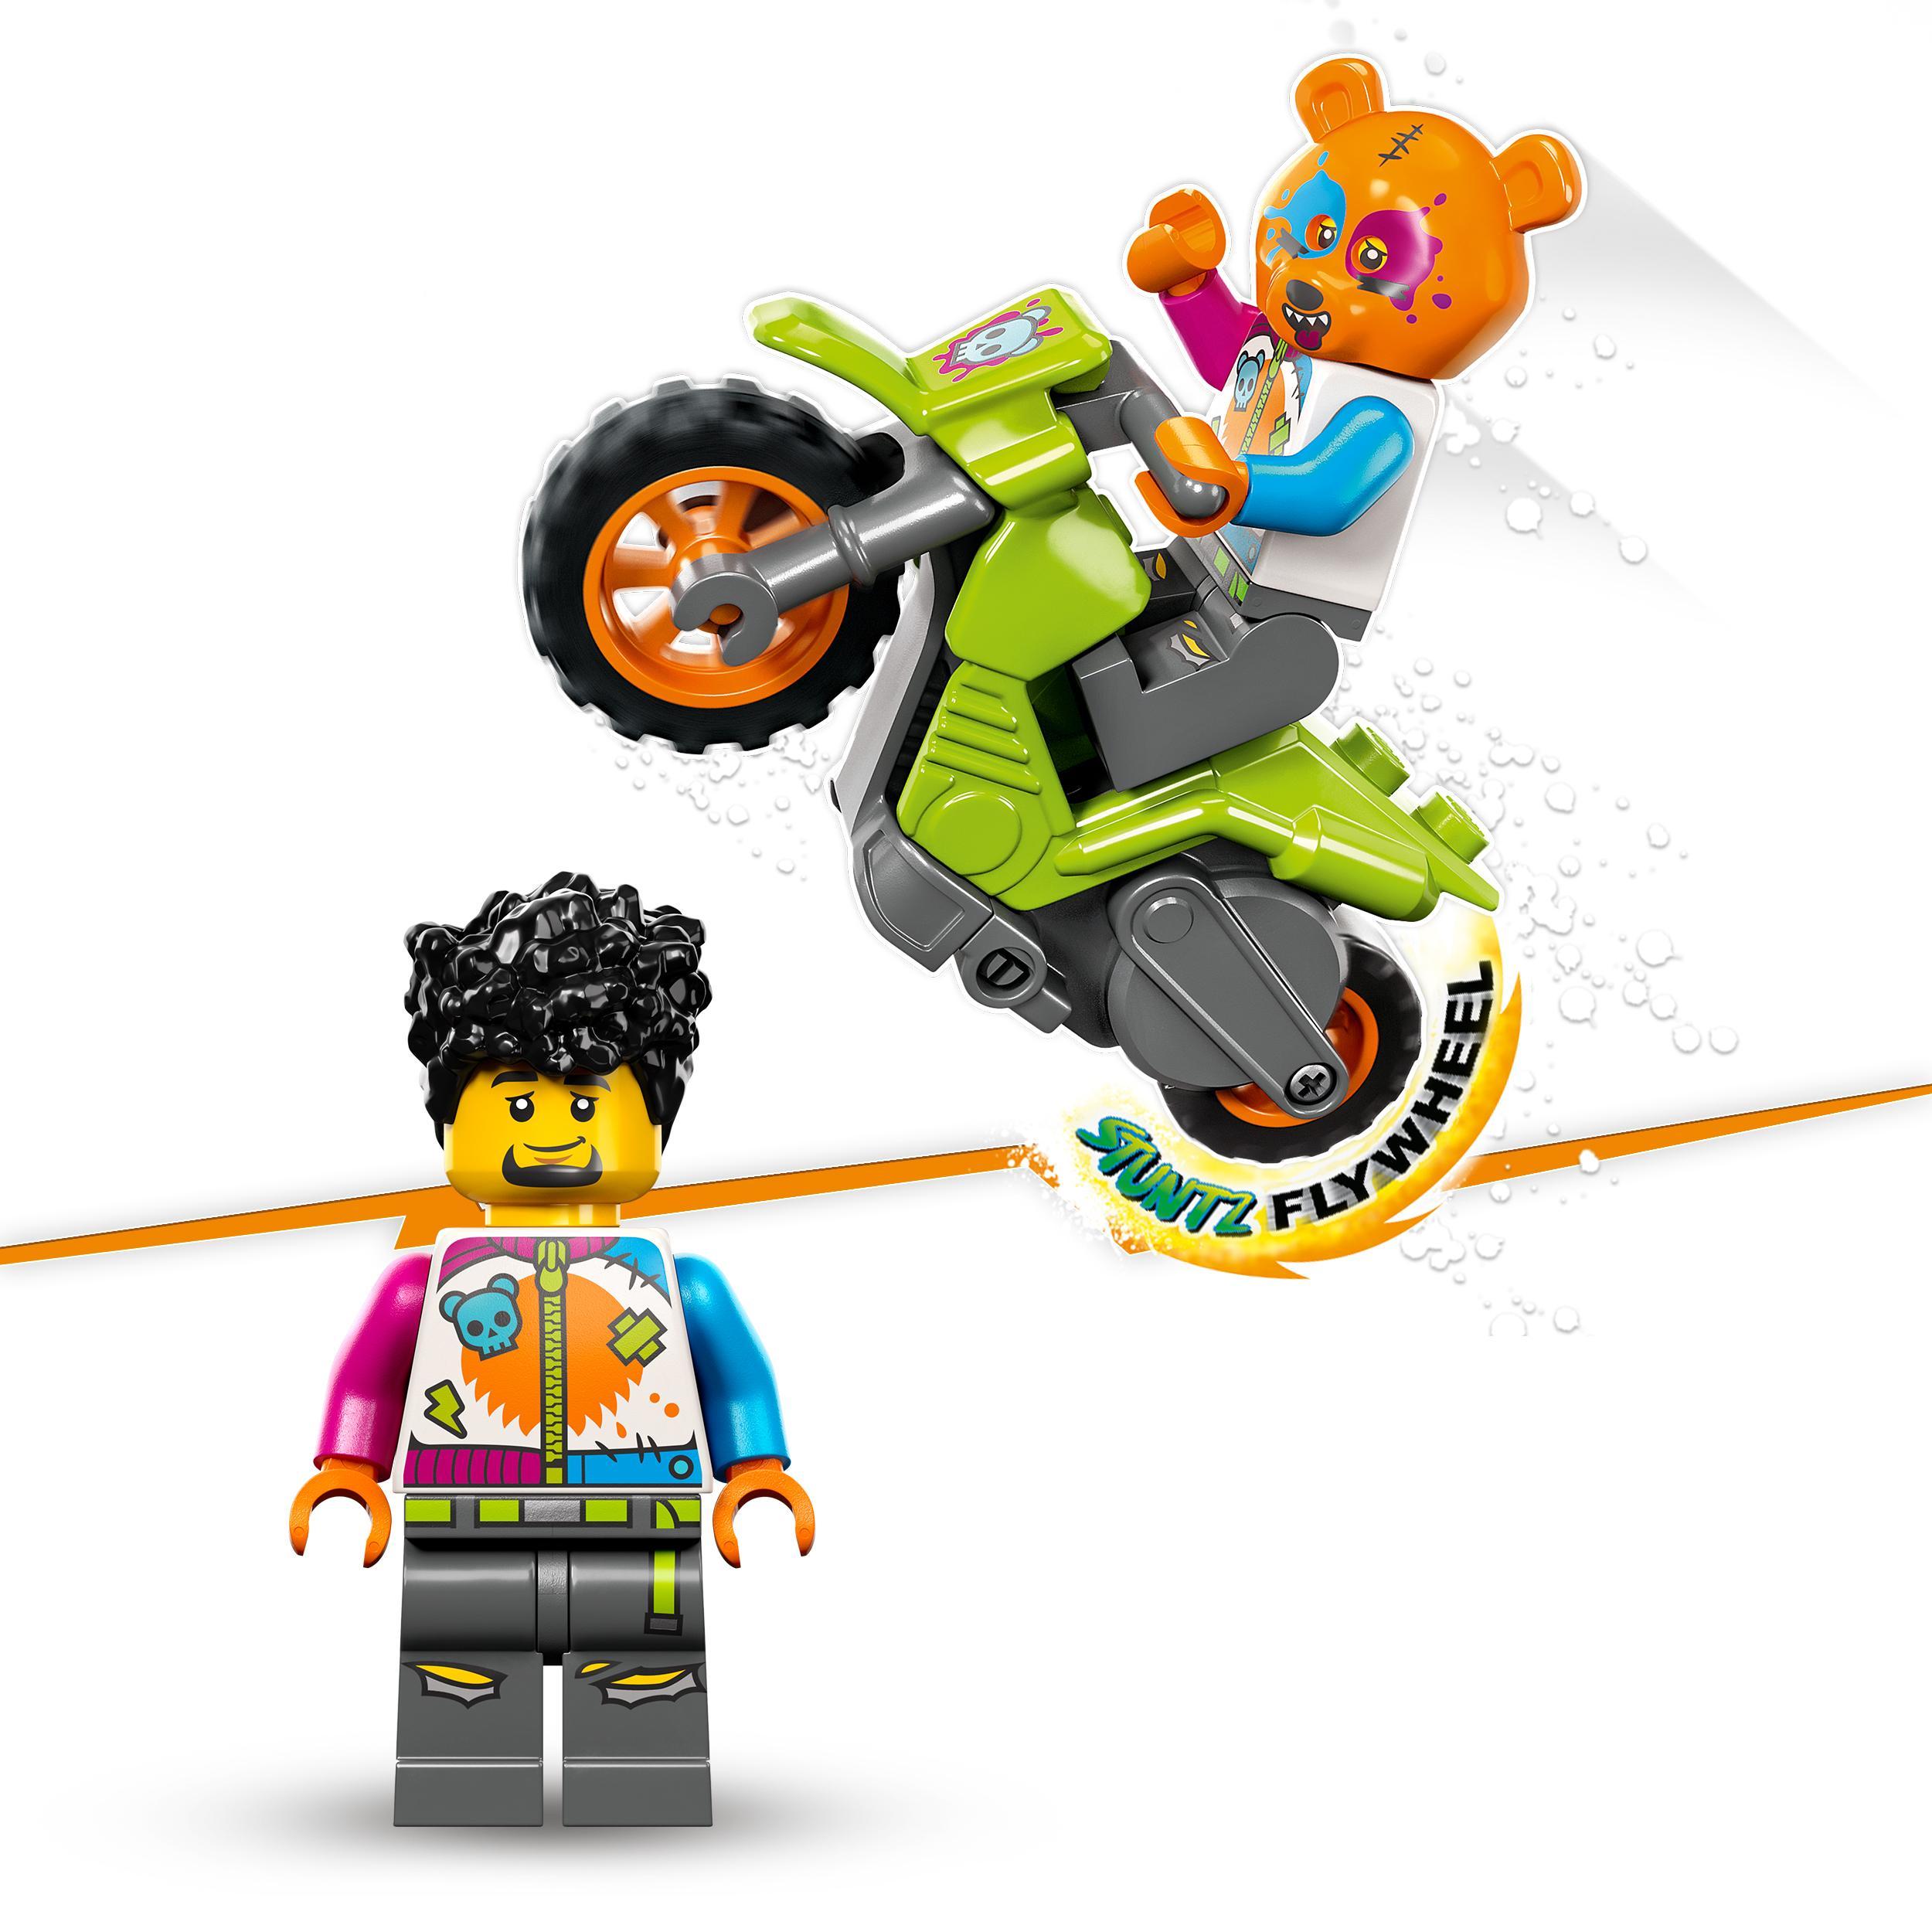 Lego city stuntz 60356 stunt bike orso, moto giocattolo carica e vai per salti e acrobazie, giochi per bambini 5+, idee regalo - LEGO CITY